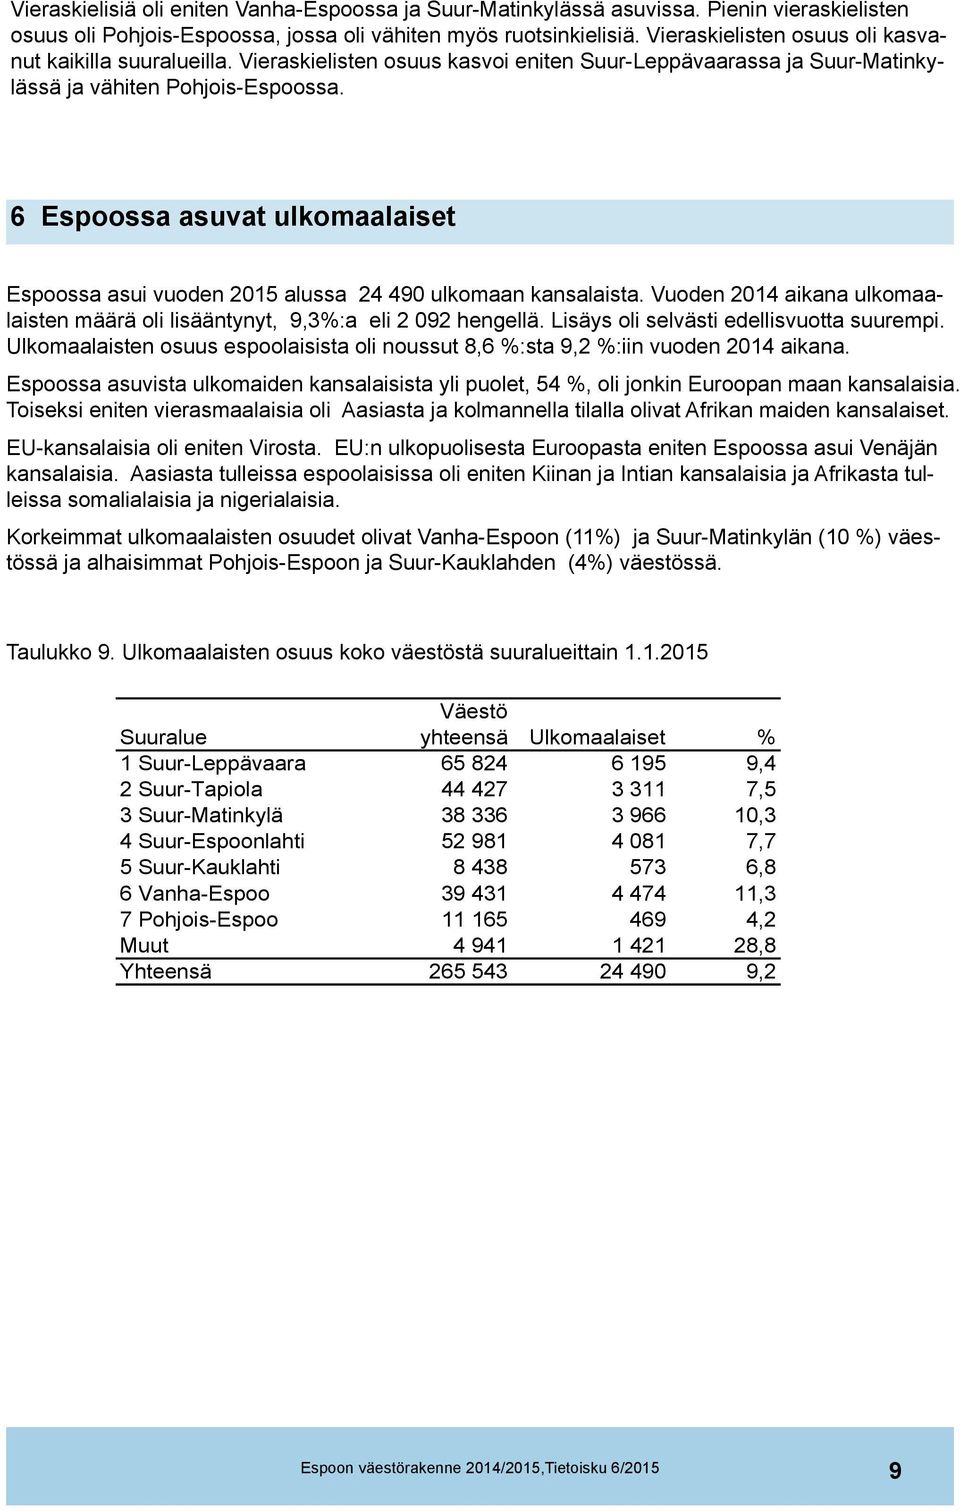 6 Espoossa asuvat ulkomaalaiset Espoossa asui vuoden 2015 alussa 24 490 ulkomaan kansalaista. Vuoden 2014 aikana ulkomaalaisten määrä oli lisääntynyt, 9,3%:a eli 2 092 hengellä.